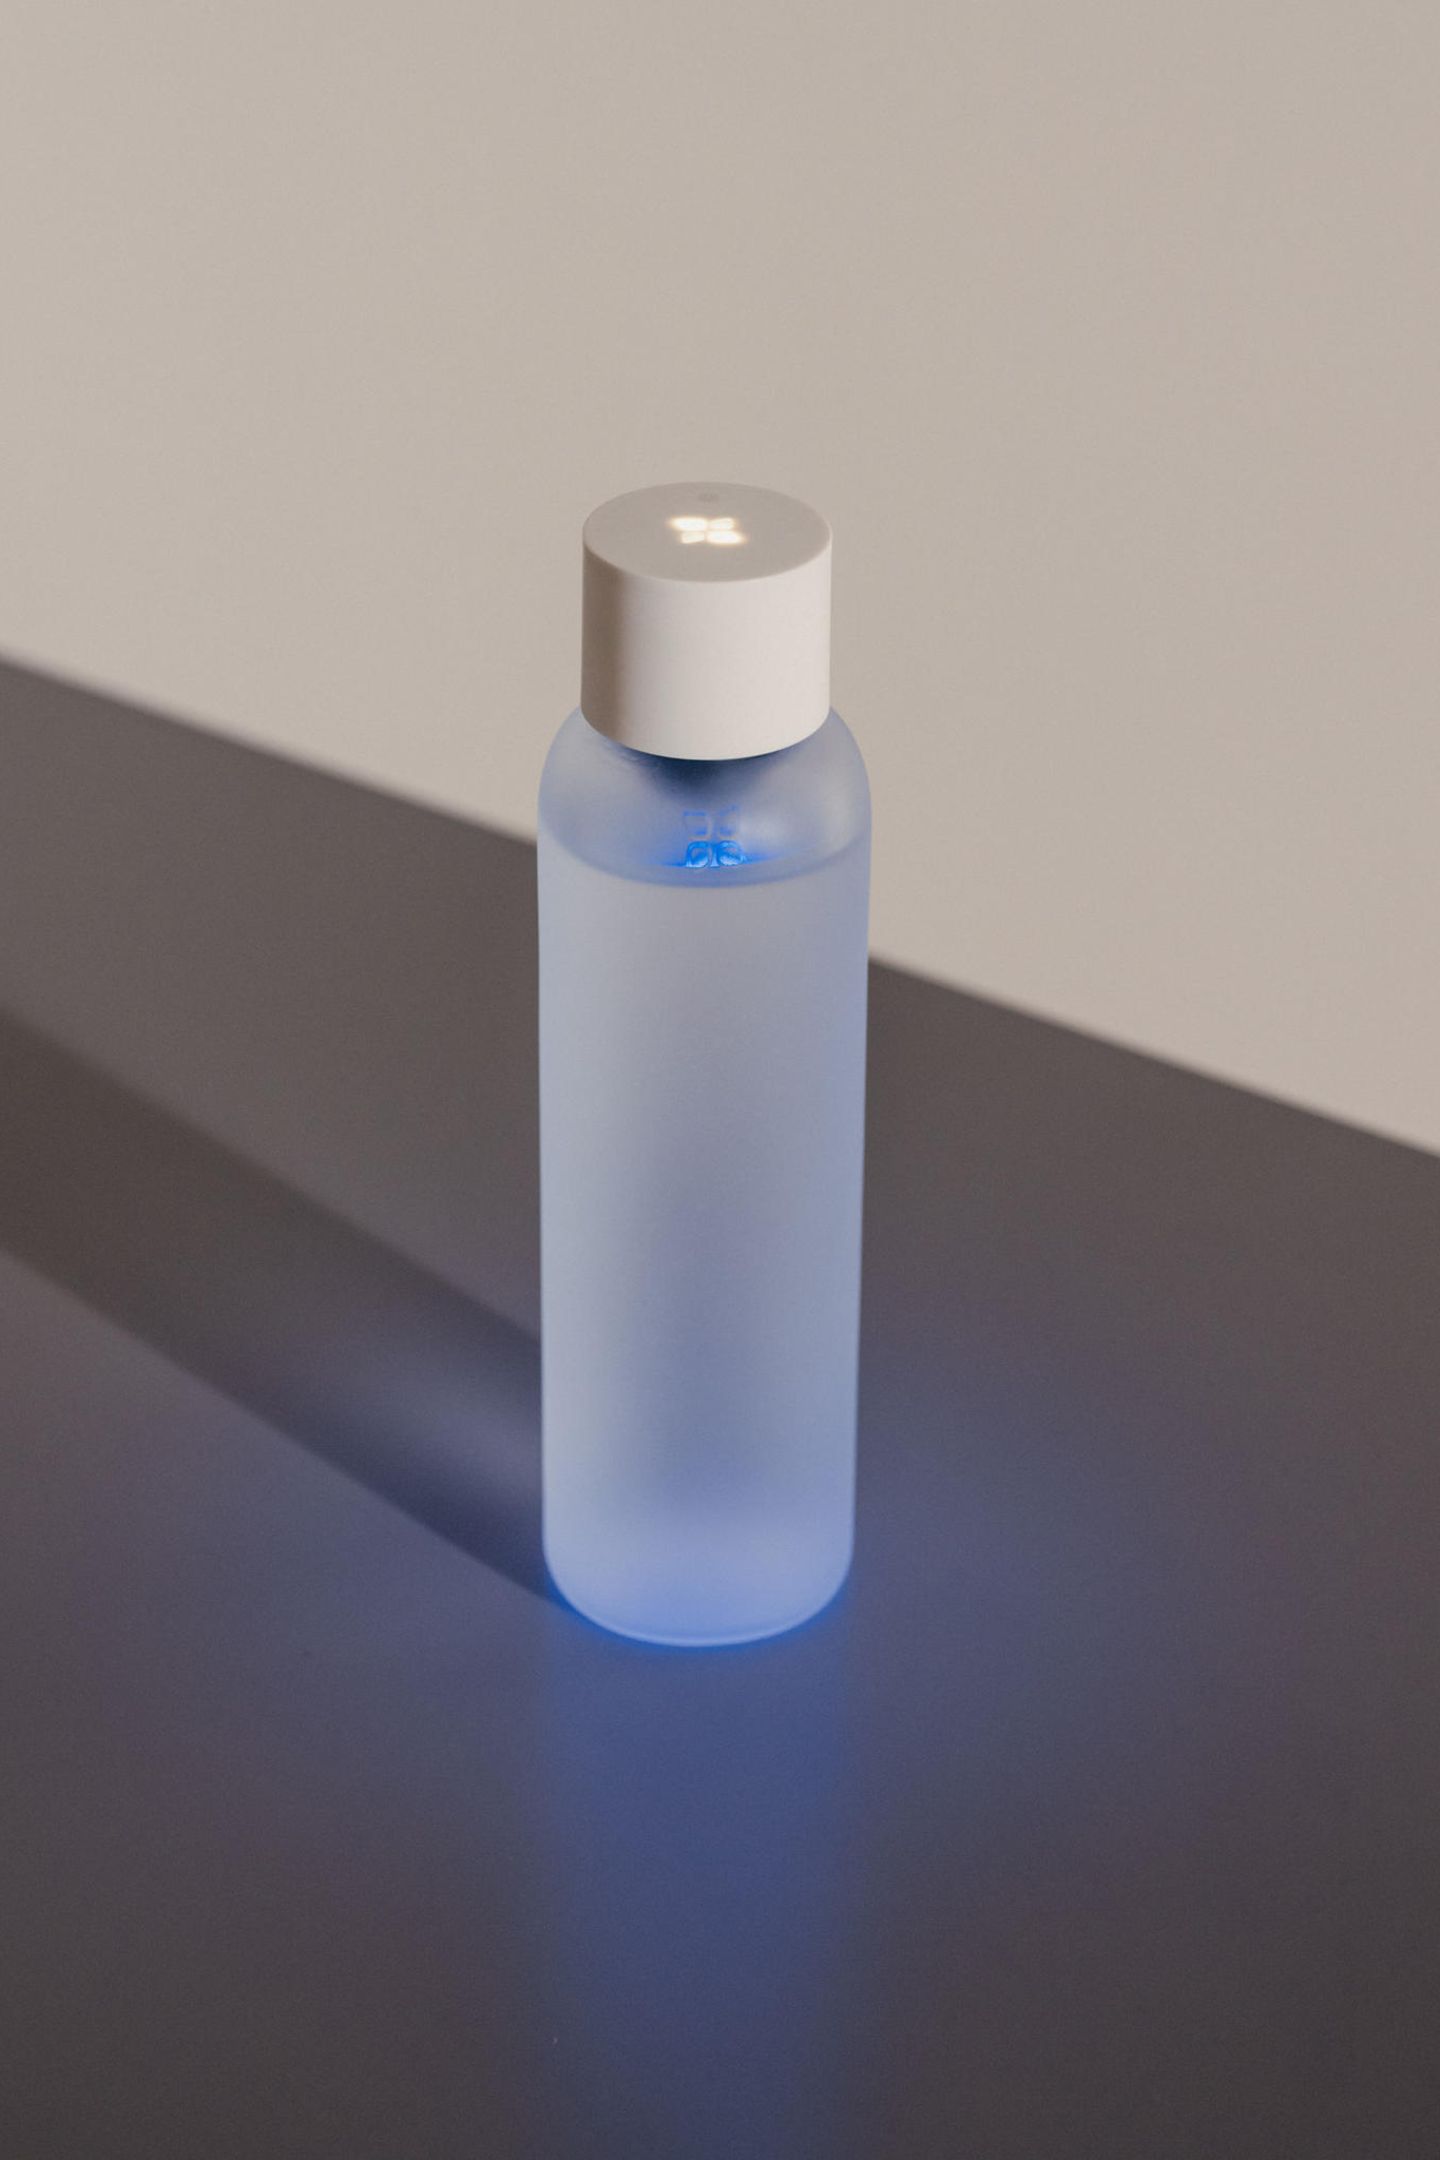 Saubere Sache Na, was leuchtet denn da in unserer Trinkflasche? Es ist Lucy! Mithilfe der innovativen UV-C Reinigungsfunktion deaktiviert der smarte Deckel bis zu 100% aller möglichen Keime im Trinkwasser der Flasche. "Lucy" von Waterdrop, ca. 120 Euro.